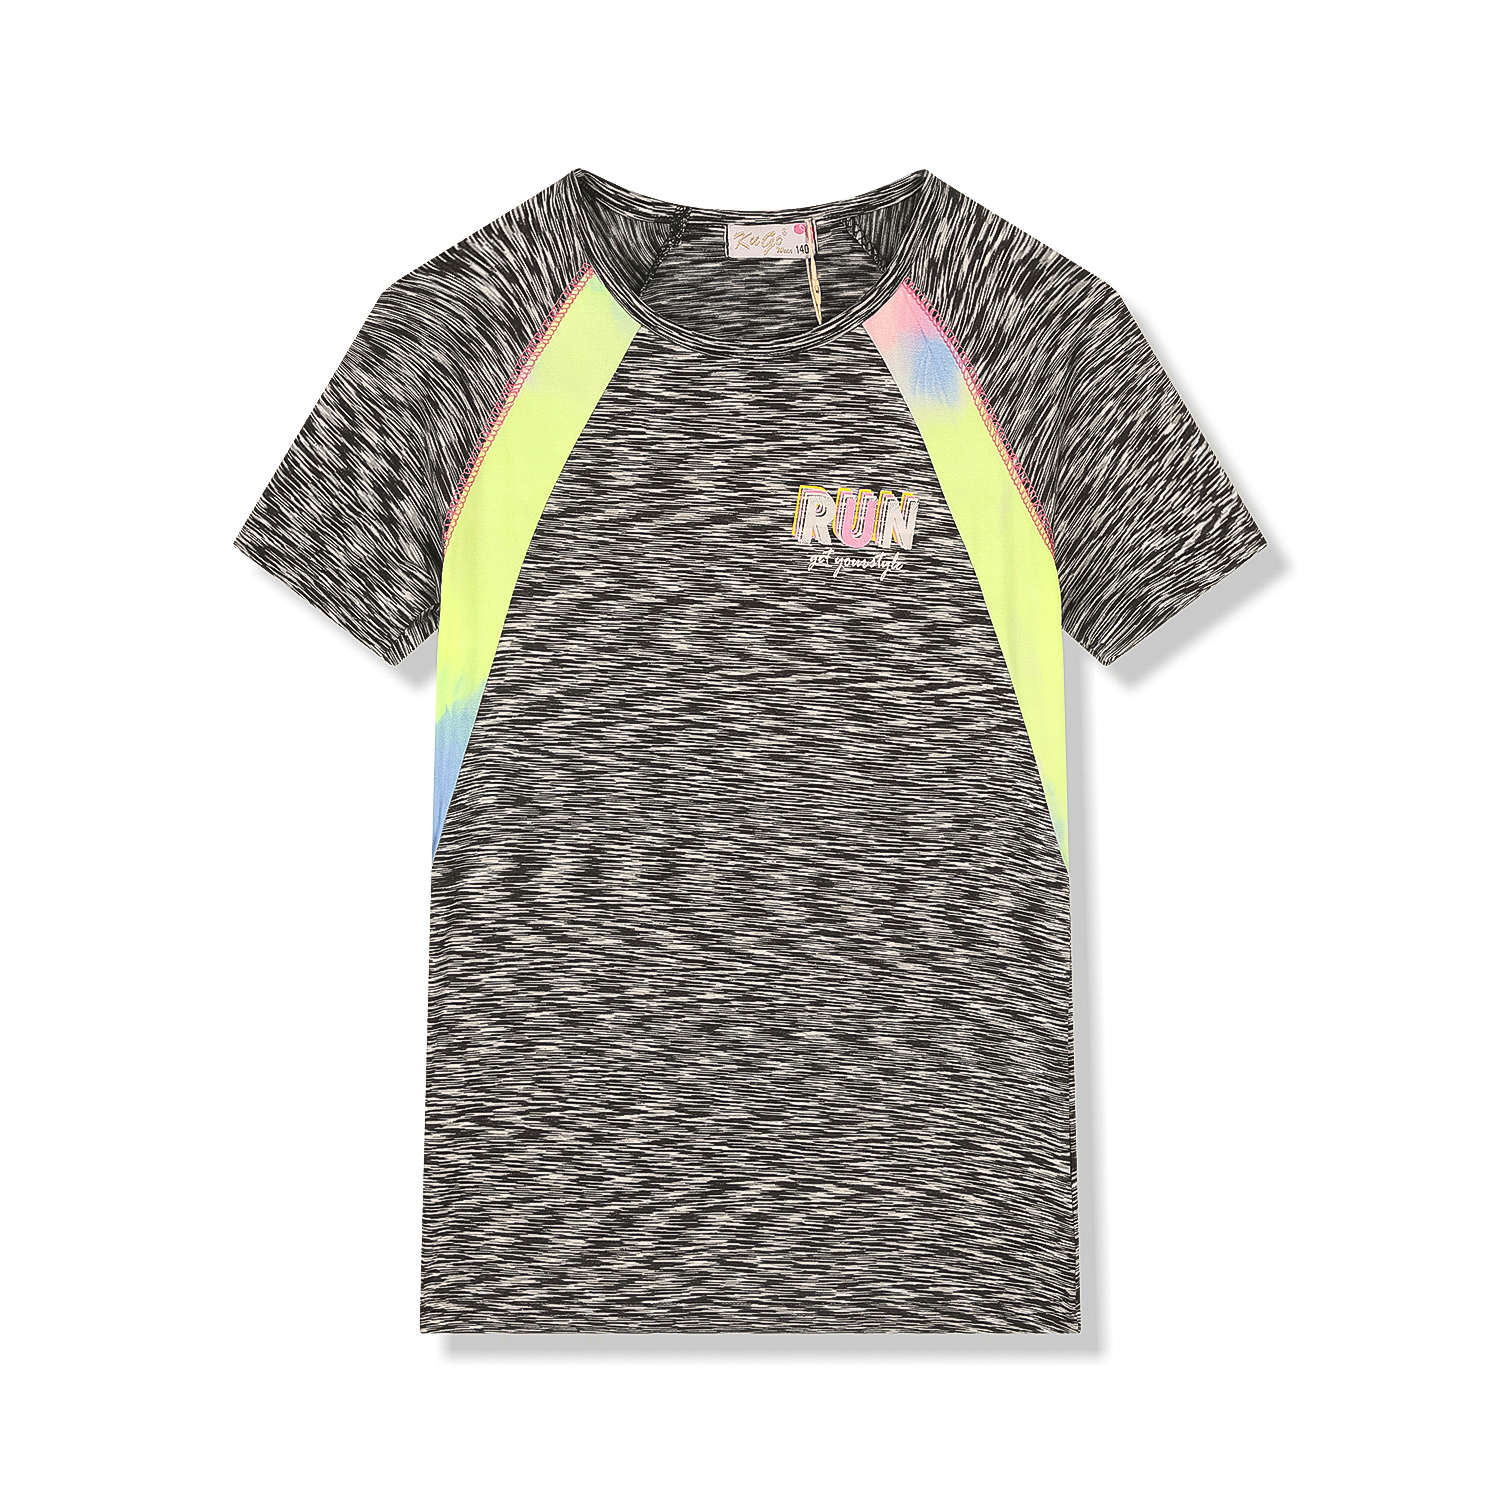 Dívčí funkční tričko - KUGO FC6756, šedočerná Barva: Černá, Velikost: 158